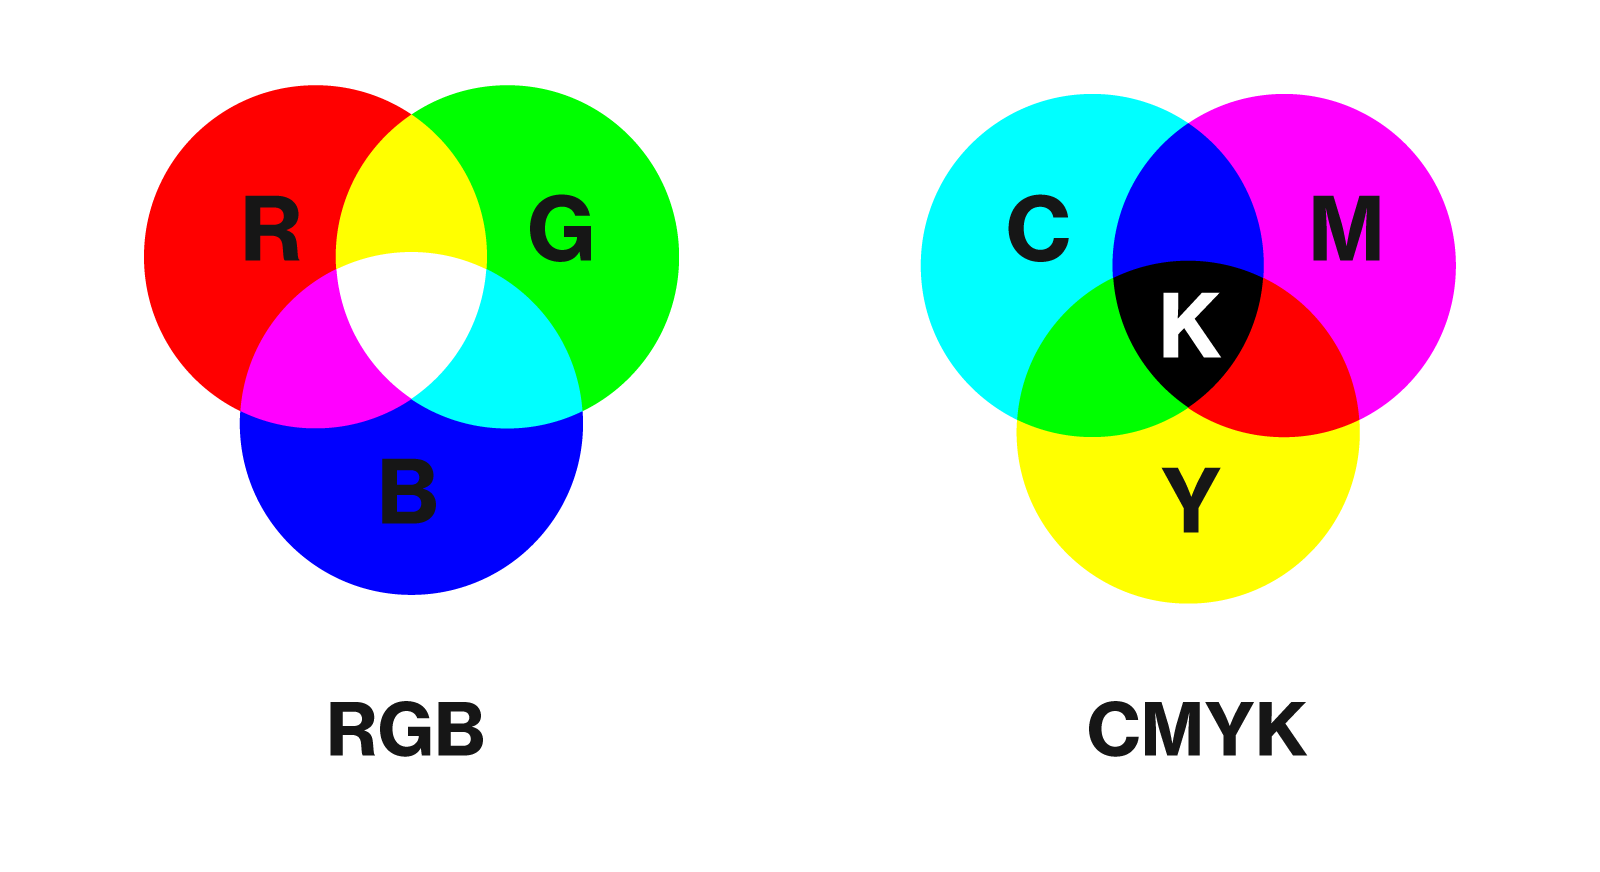 Профиль cmyk. Цветовая модель CMYK. Цветовая модель RGB И CMYK. Цветовые схемы RGB И CMYK. Цветовое пространство RGB smyk.